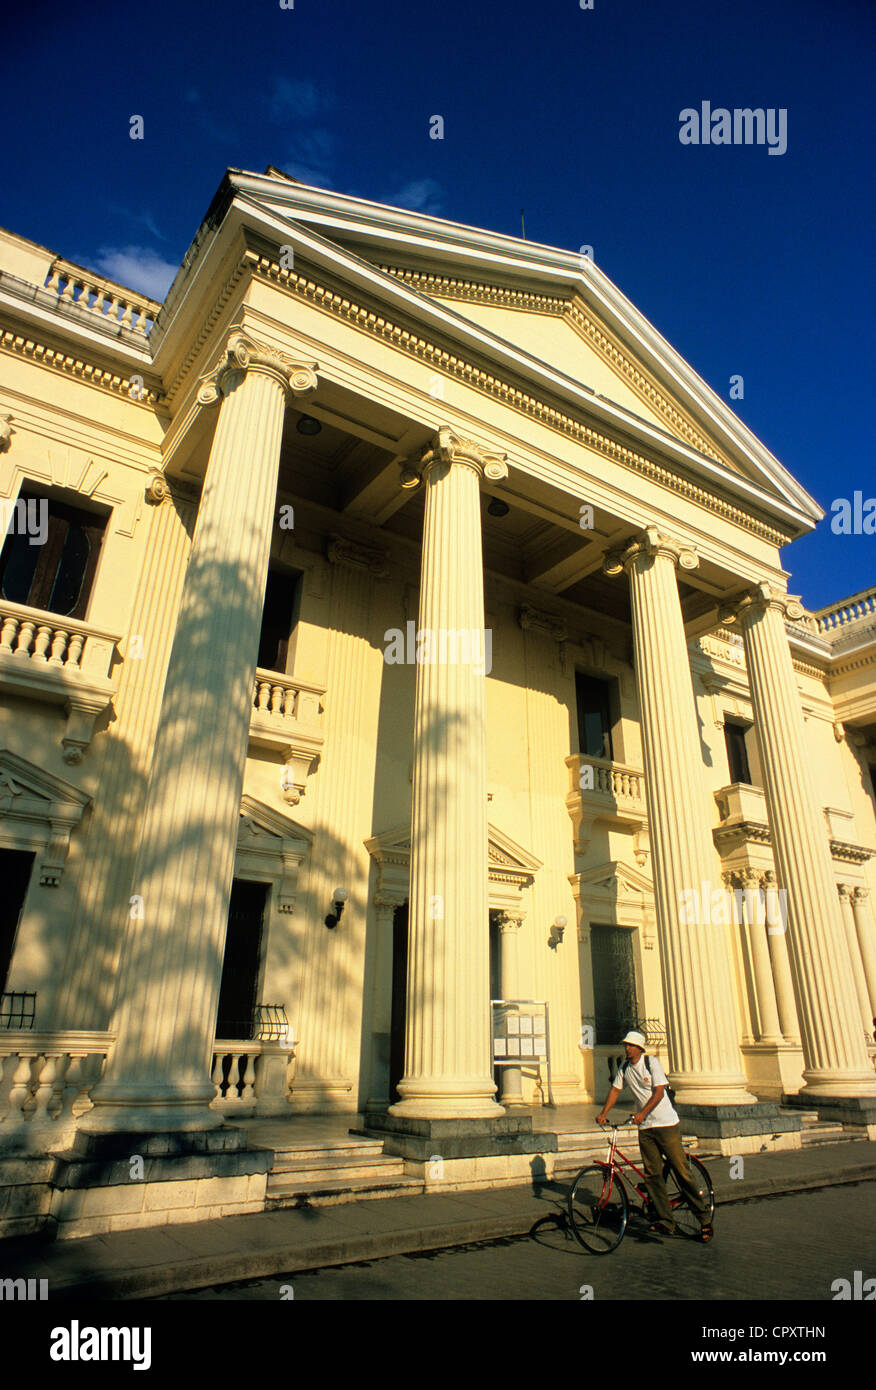 Cuba, Villa Clara Province, Santa Clara, Palacio Provincial on Parque Central Stock Photo